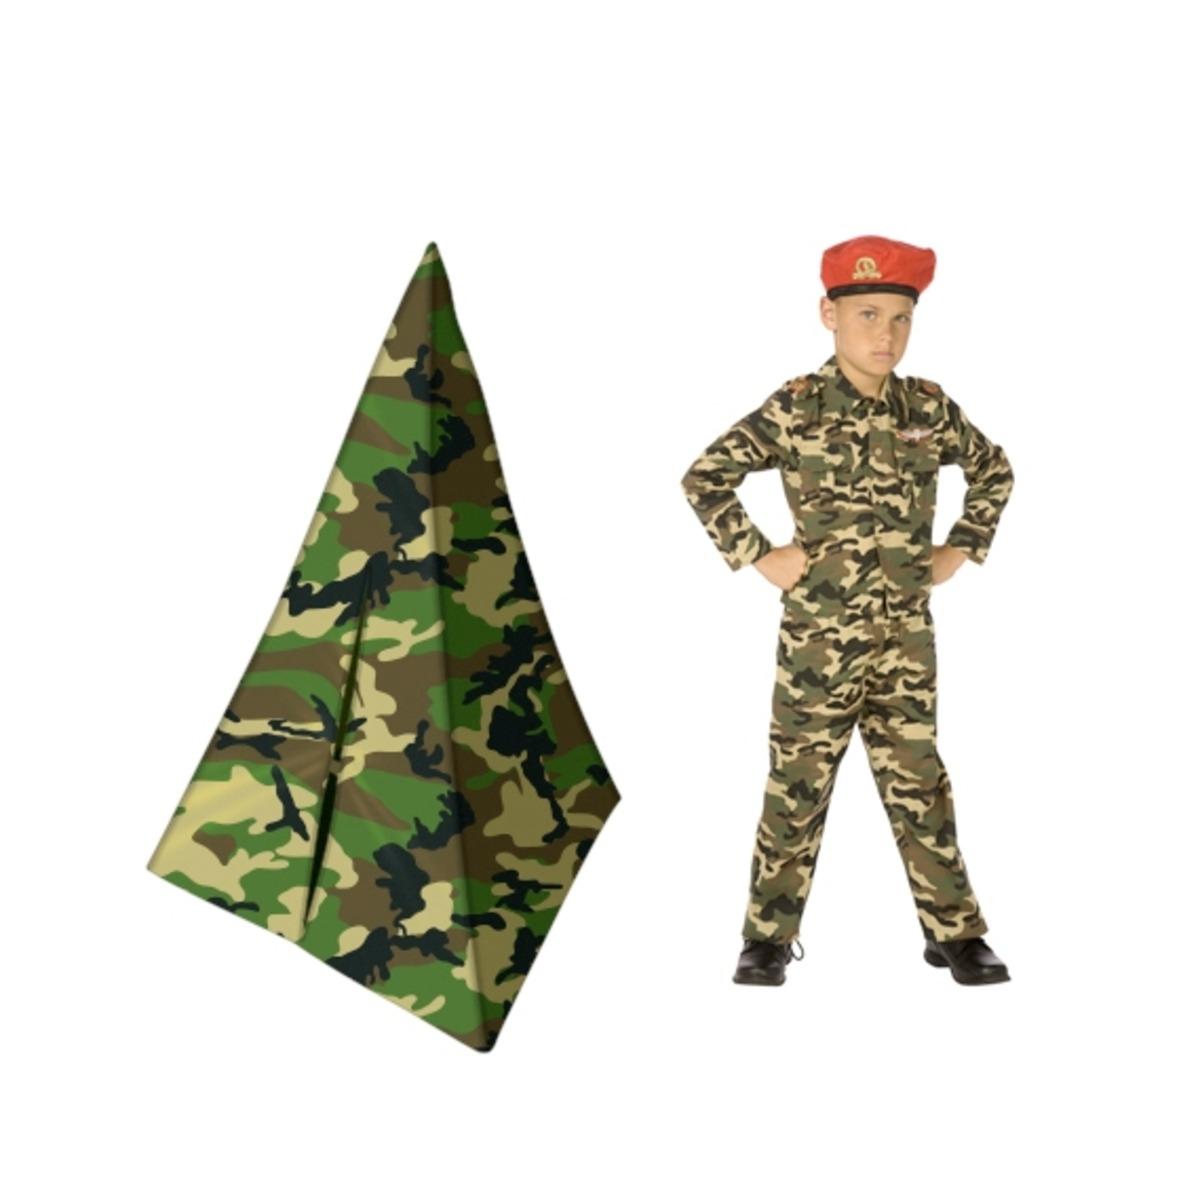 Tente camouflage + déguisement militaire 4 à 6 ans - Tente H 135 cm - Vert, marron